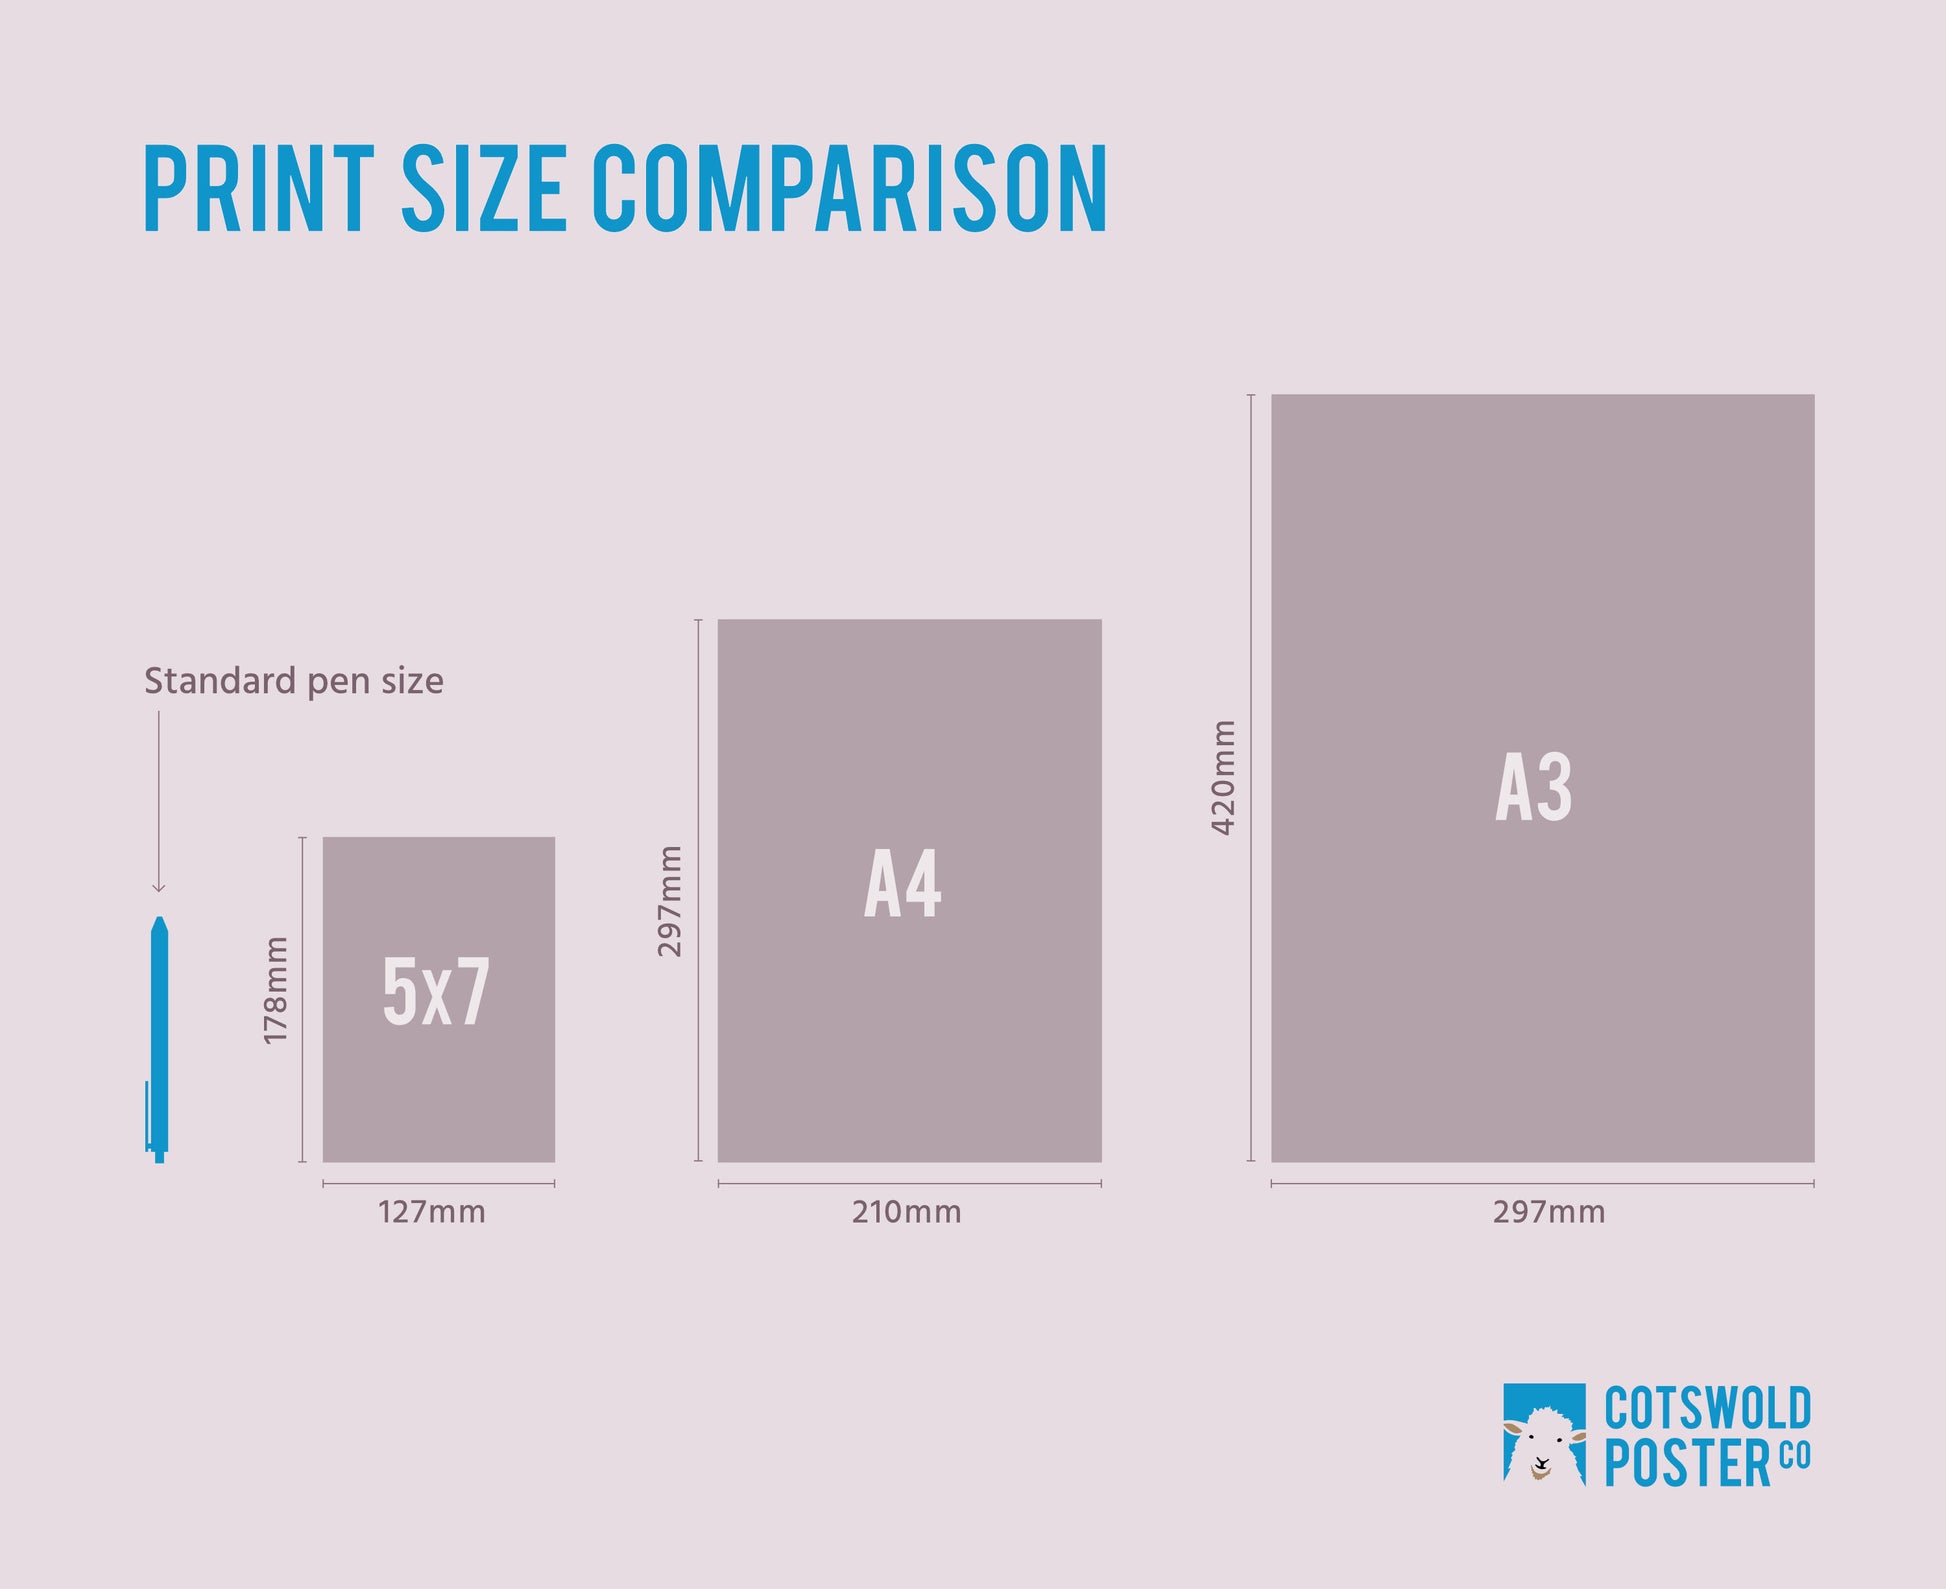 Print size comparison graphic